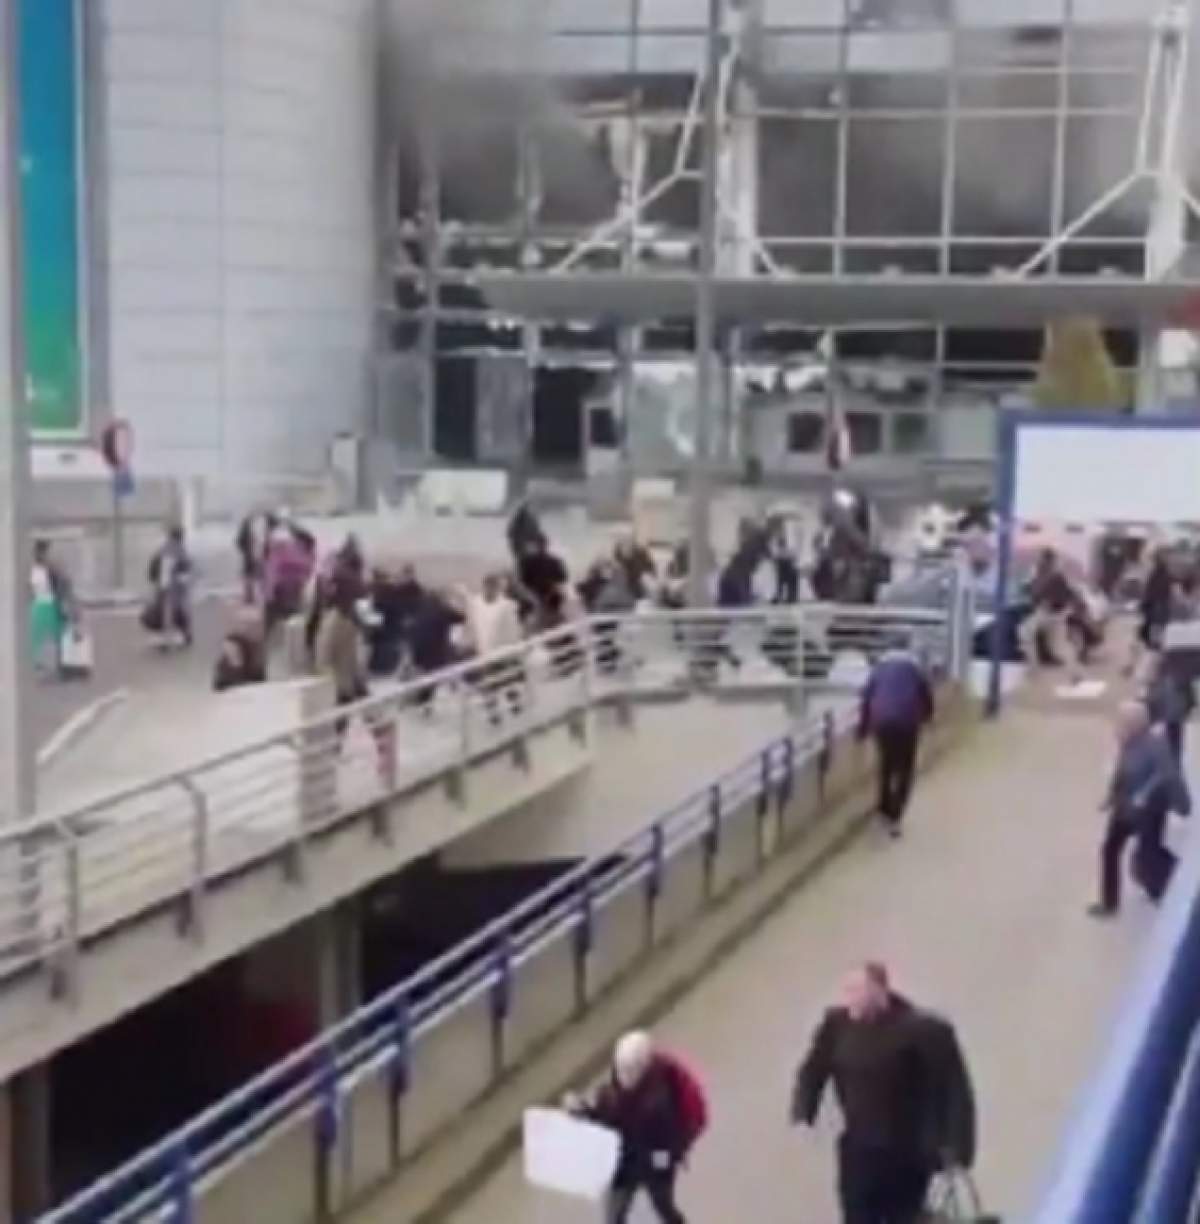 VIDEO / Cea mai dramatică imagine de pe aeroportul Zaventem, din Bruxelles. Îşi urlă durerea printre flăcări şi tavanul care pica